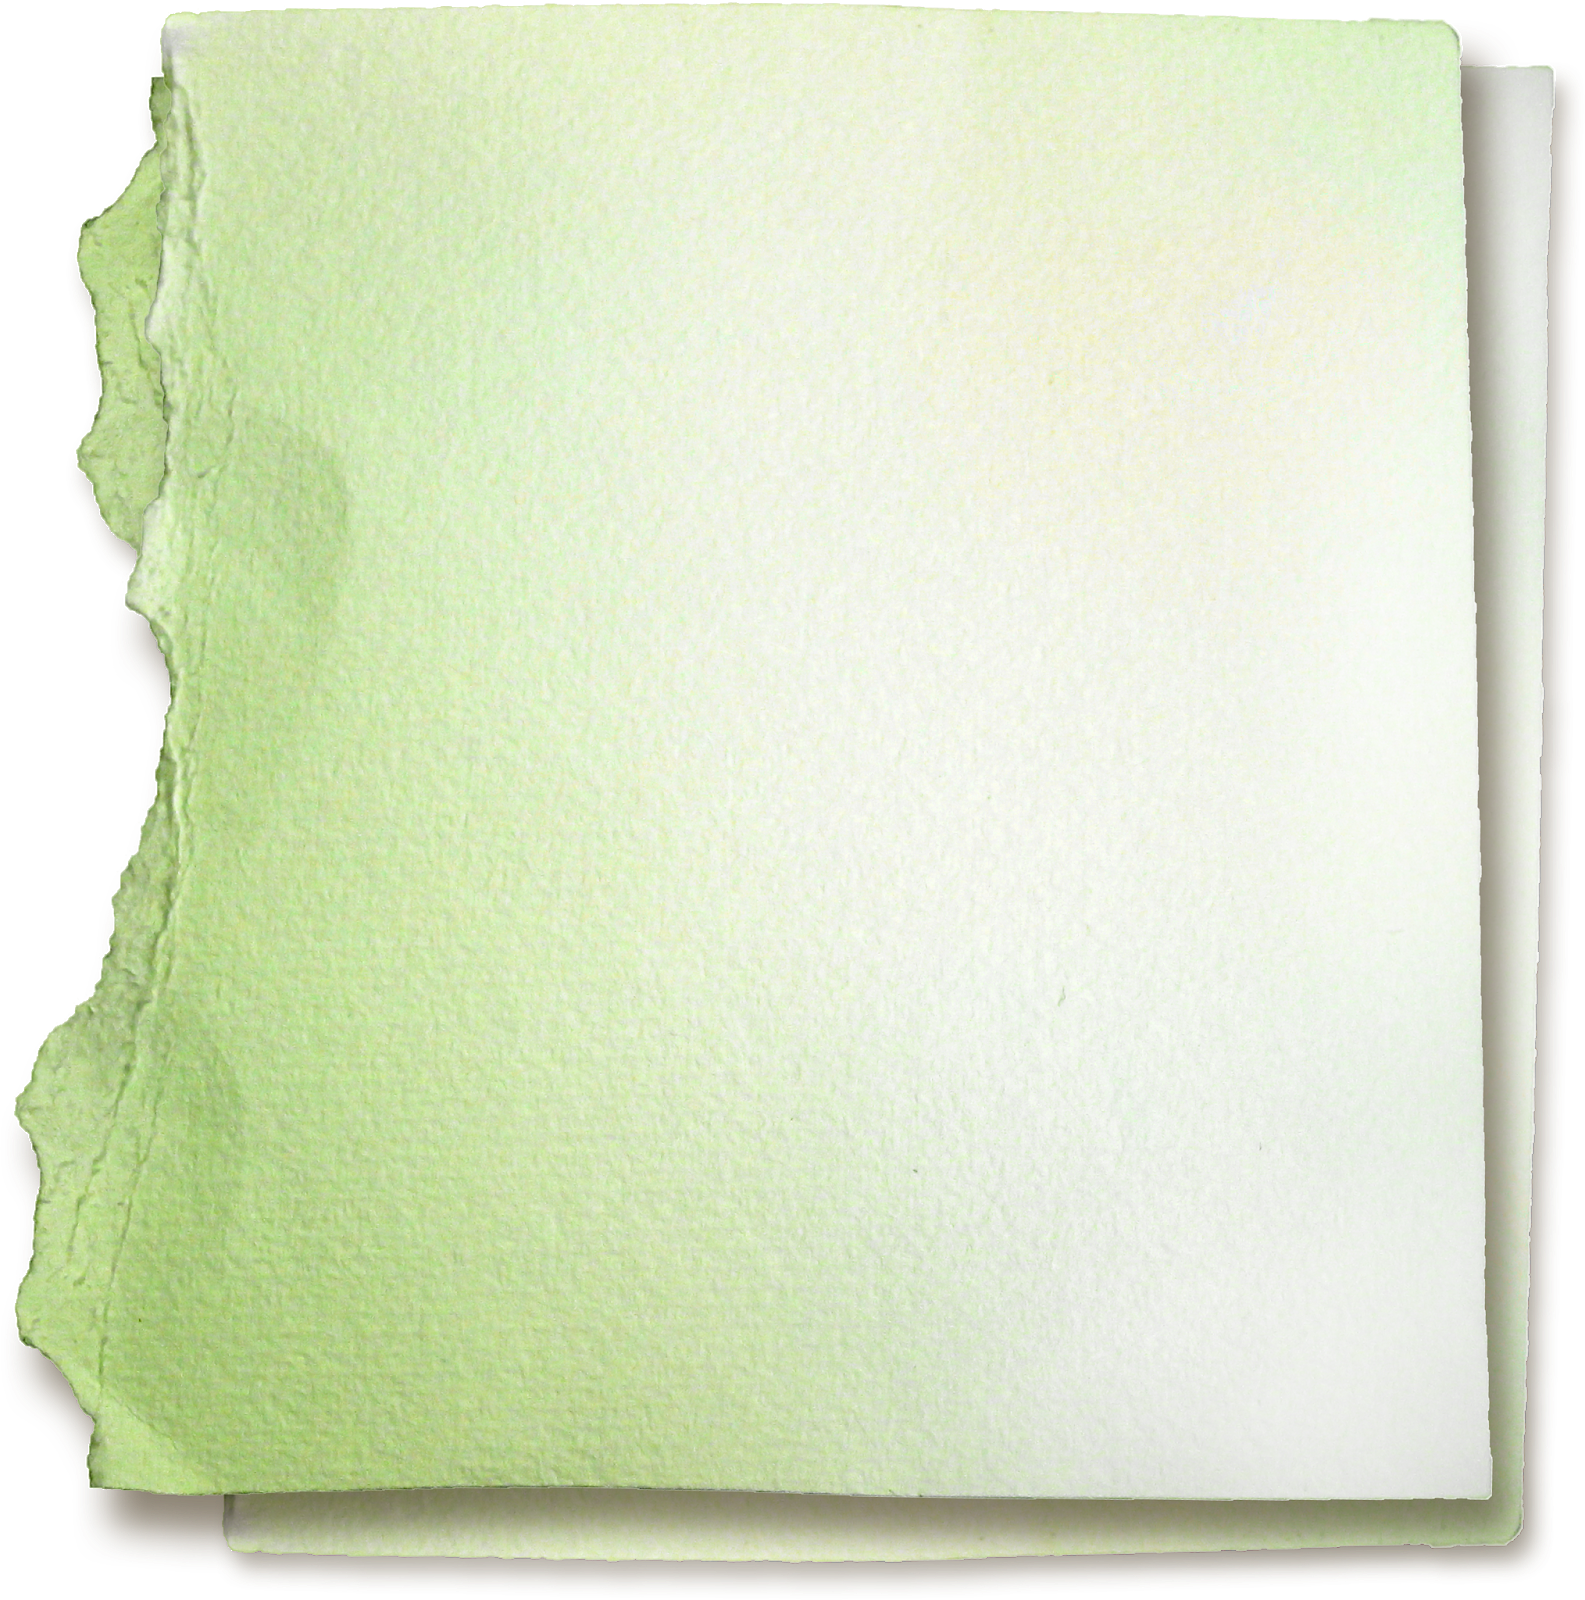 Бумажка пнг. Лист бумаги. Бумажный лист. Акварельный лист бумаги. Рваная зеленая бумага.